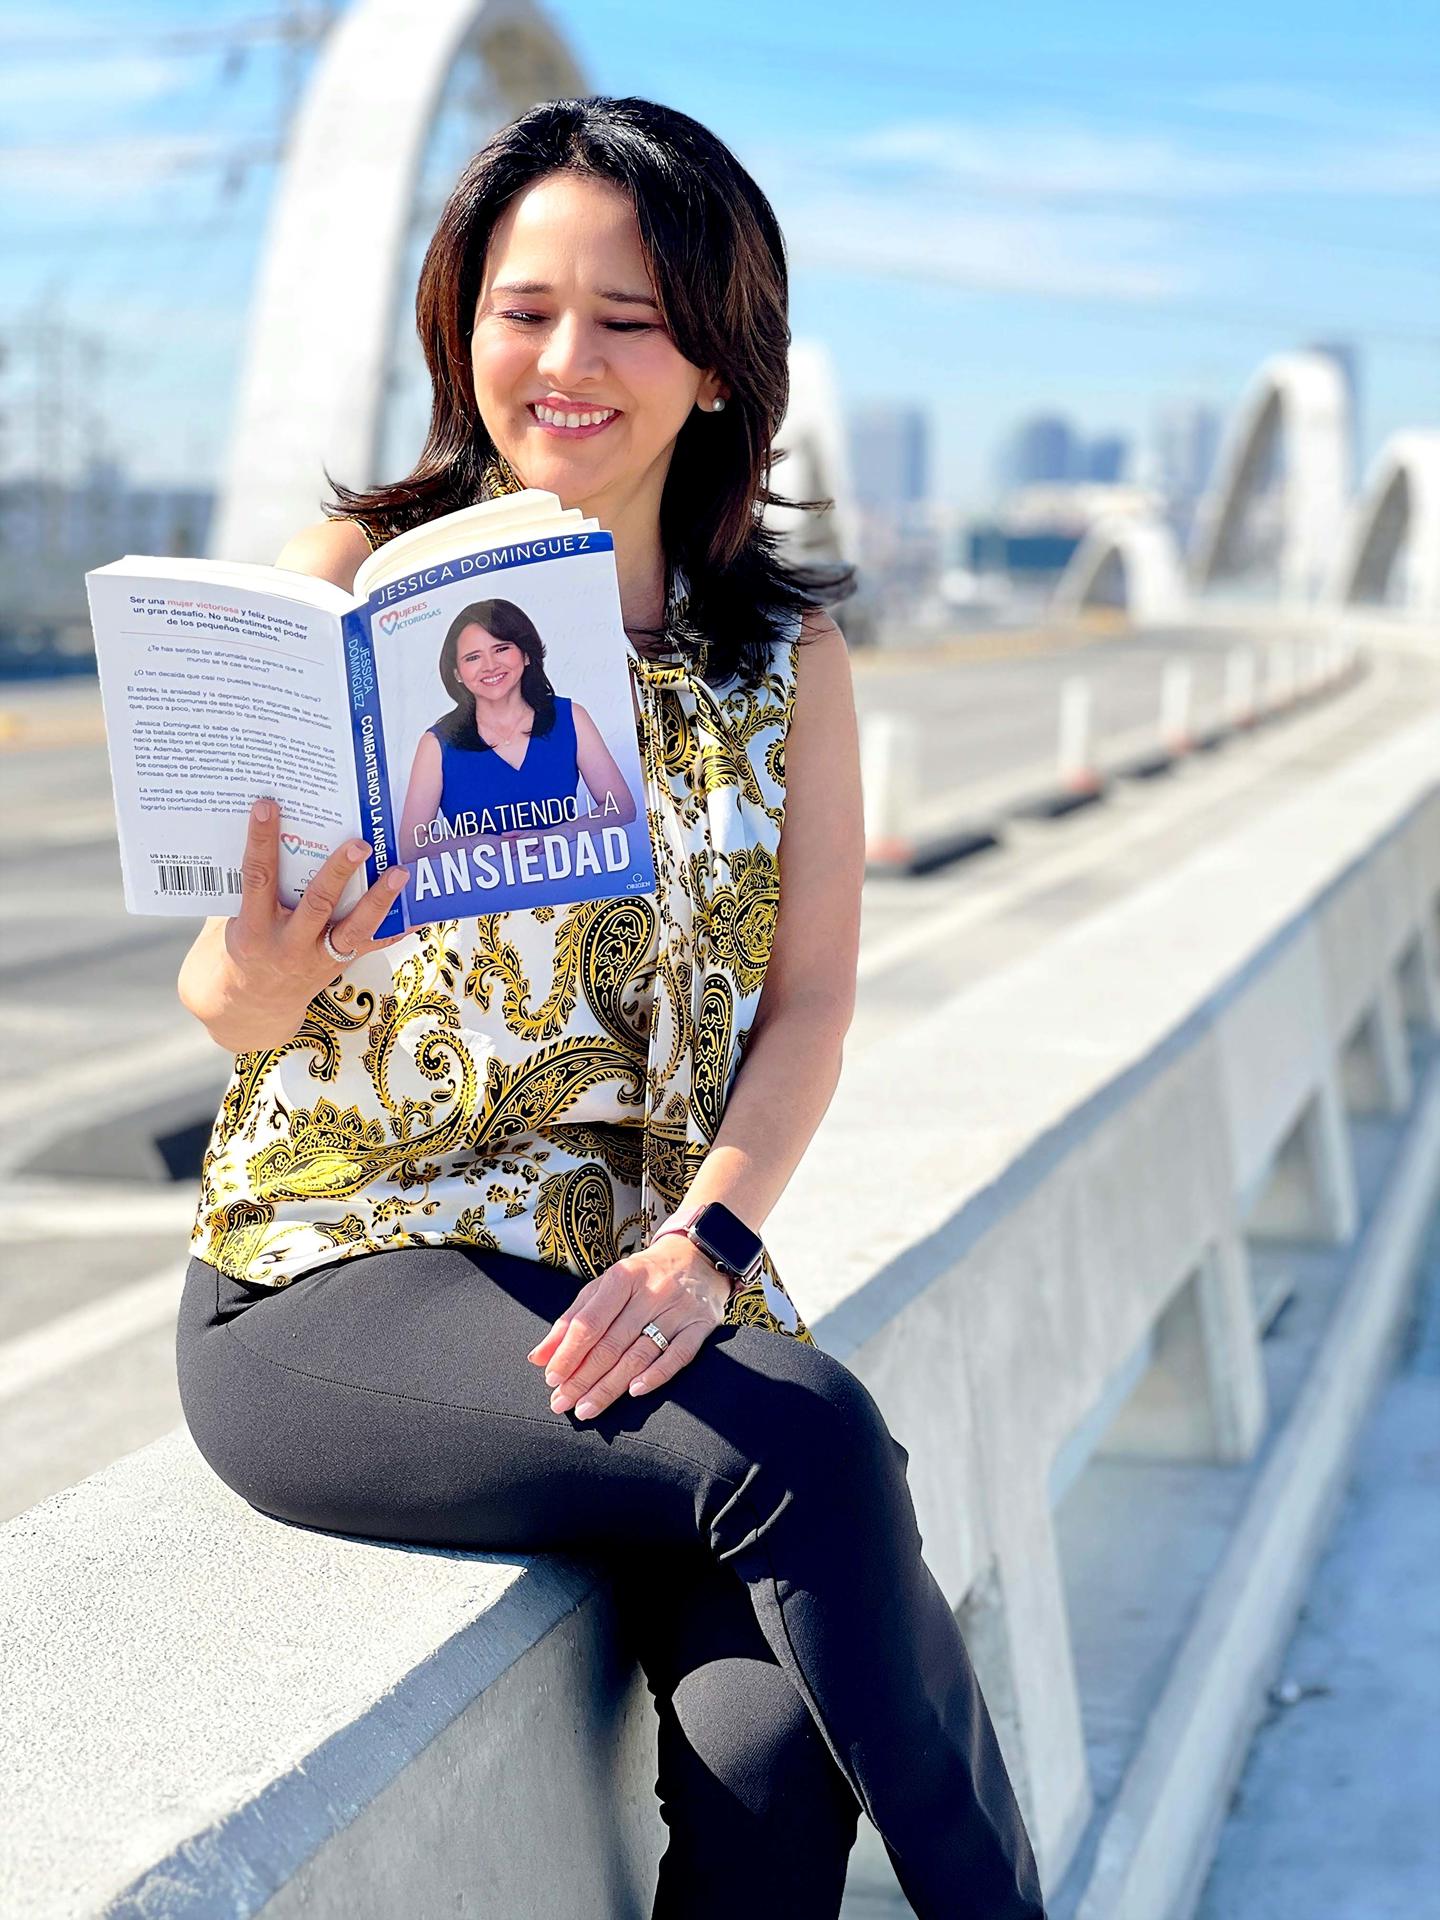 Fotografía personal cedida donde aparece la abogada peruana Jessica Domínguez mientras posa hojeando su nuevo libro 